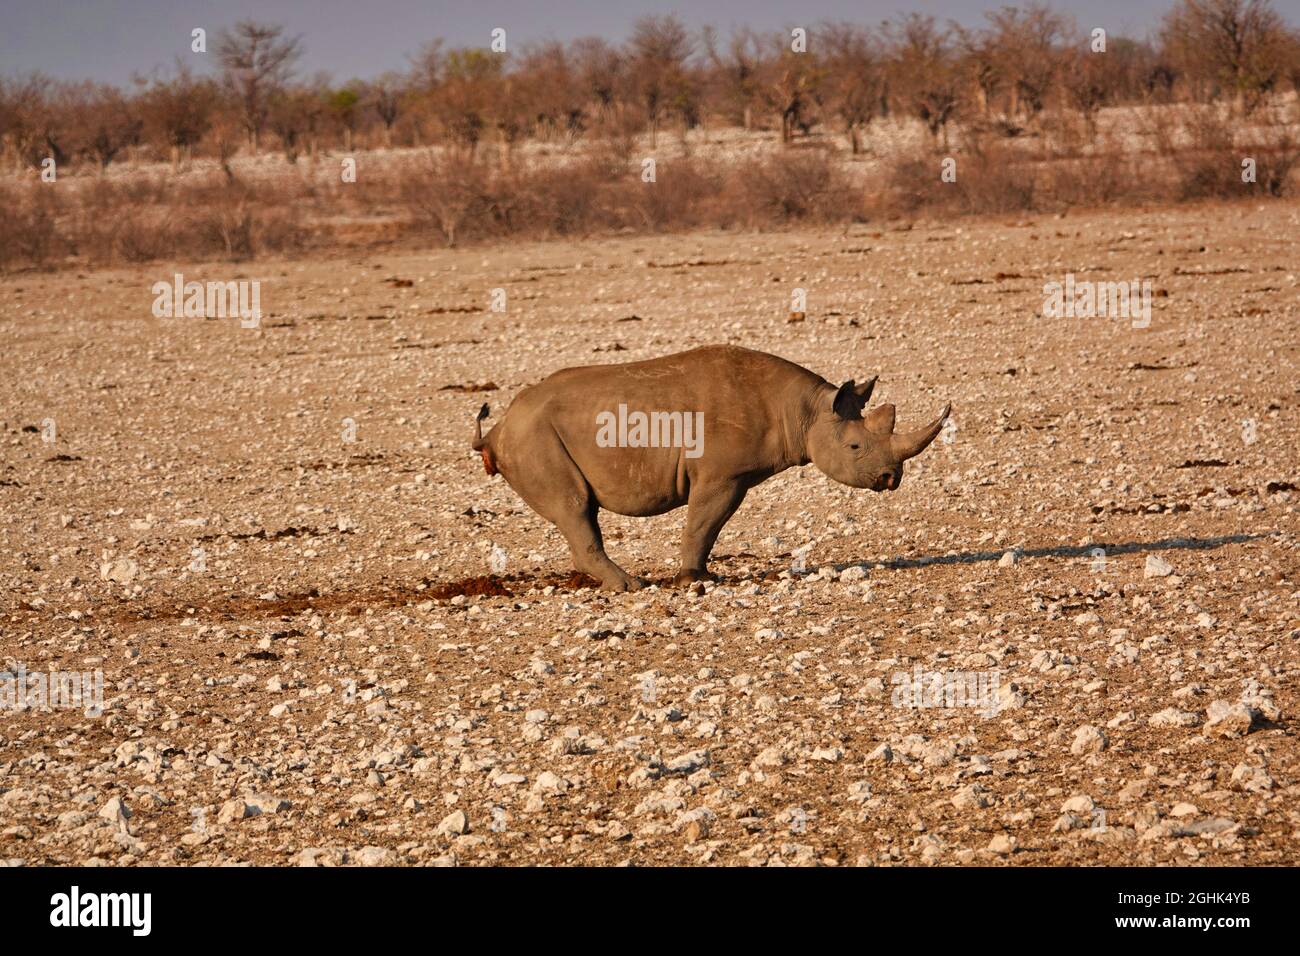 Un rhinocéros défécate sur une plaine de gravier jaune. Mode de vie de divers animaux sauvages dans le parc national d'Etosha. Namibie. Afrique du Sud. Octobre 2019 Banque D'Images